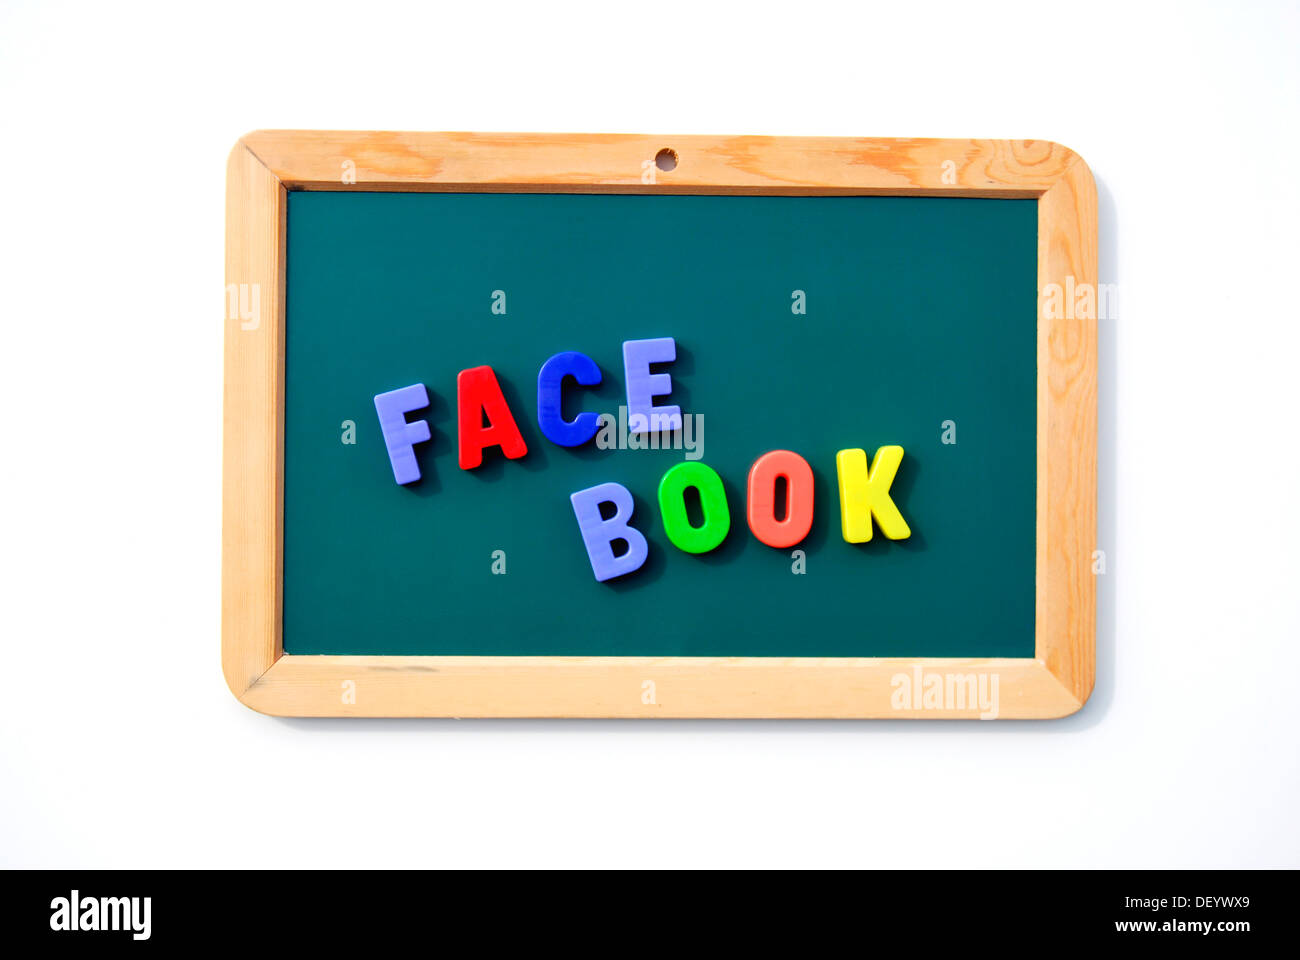 Facebook, écrit avec des lettres magnétiques sur un tableau noir de l'enfant, communauté en ligne, réseaux sociaux, plate-forme Internet Banque D'Images